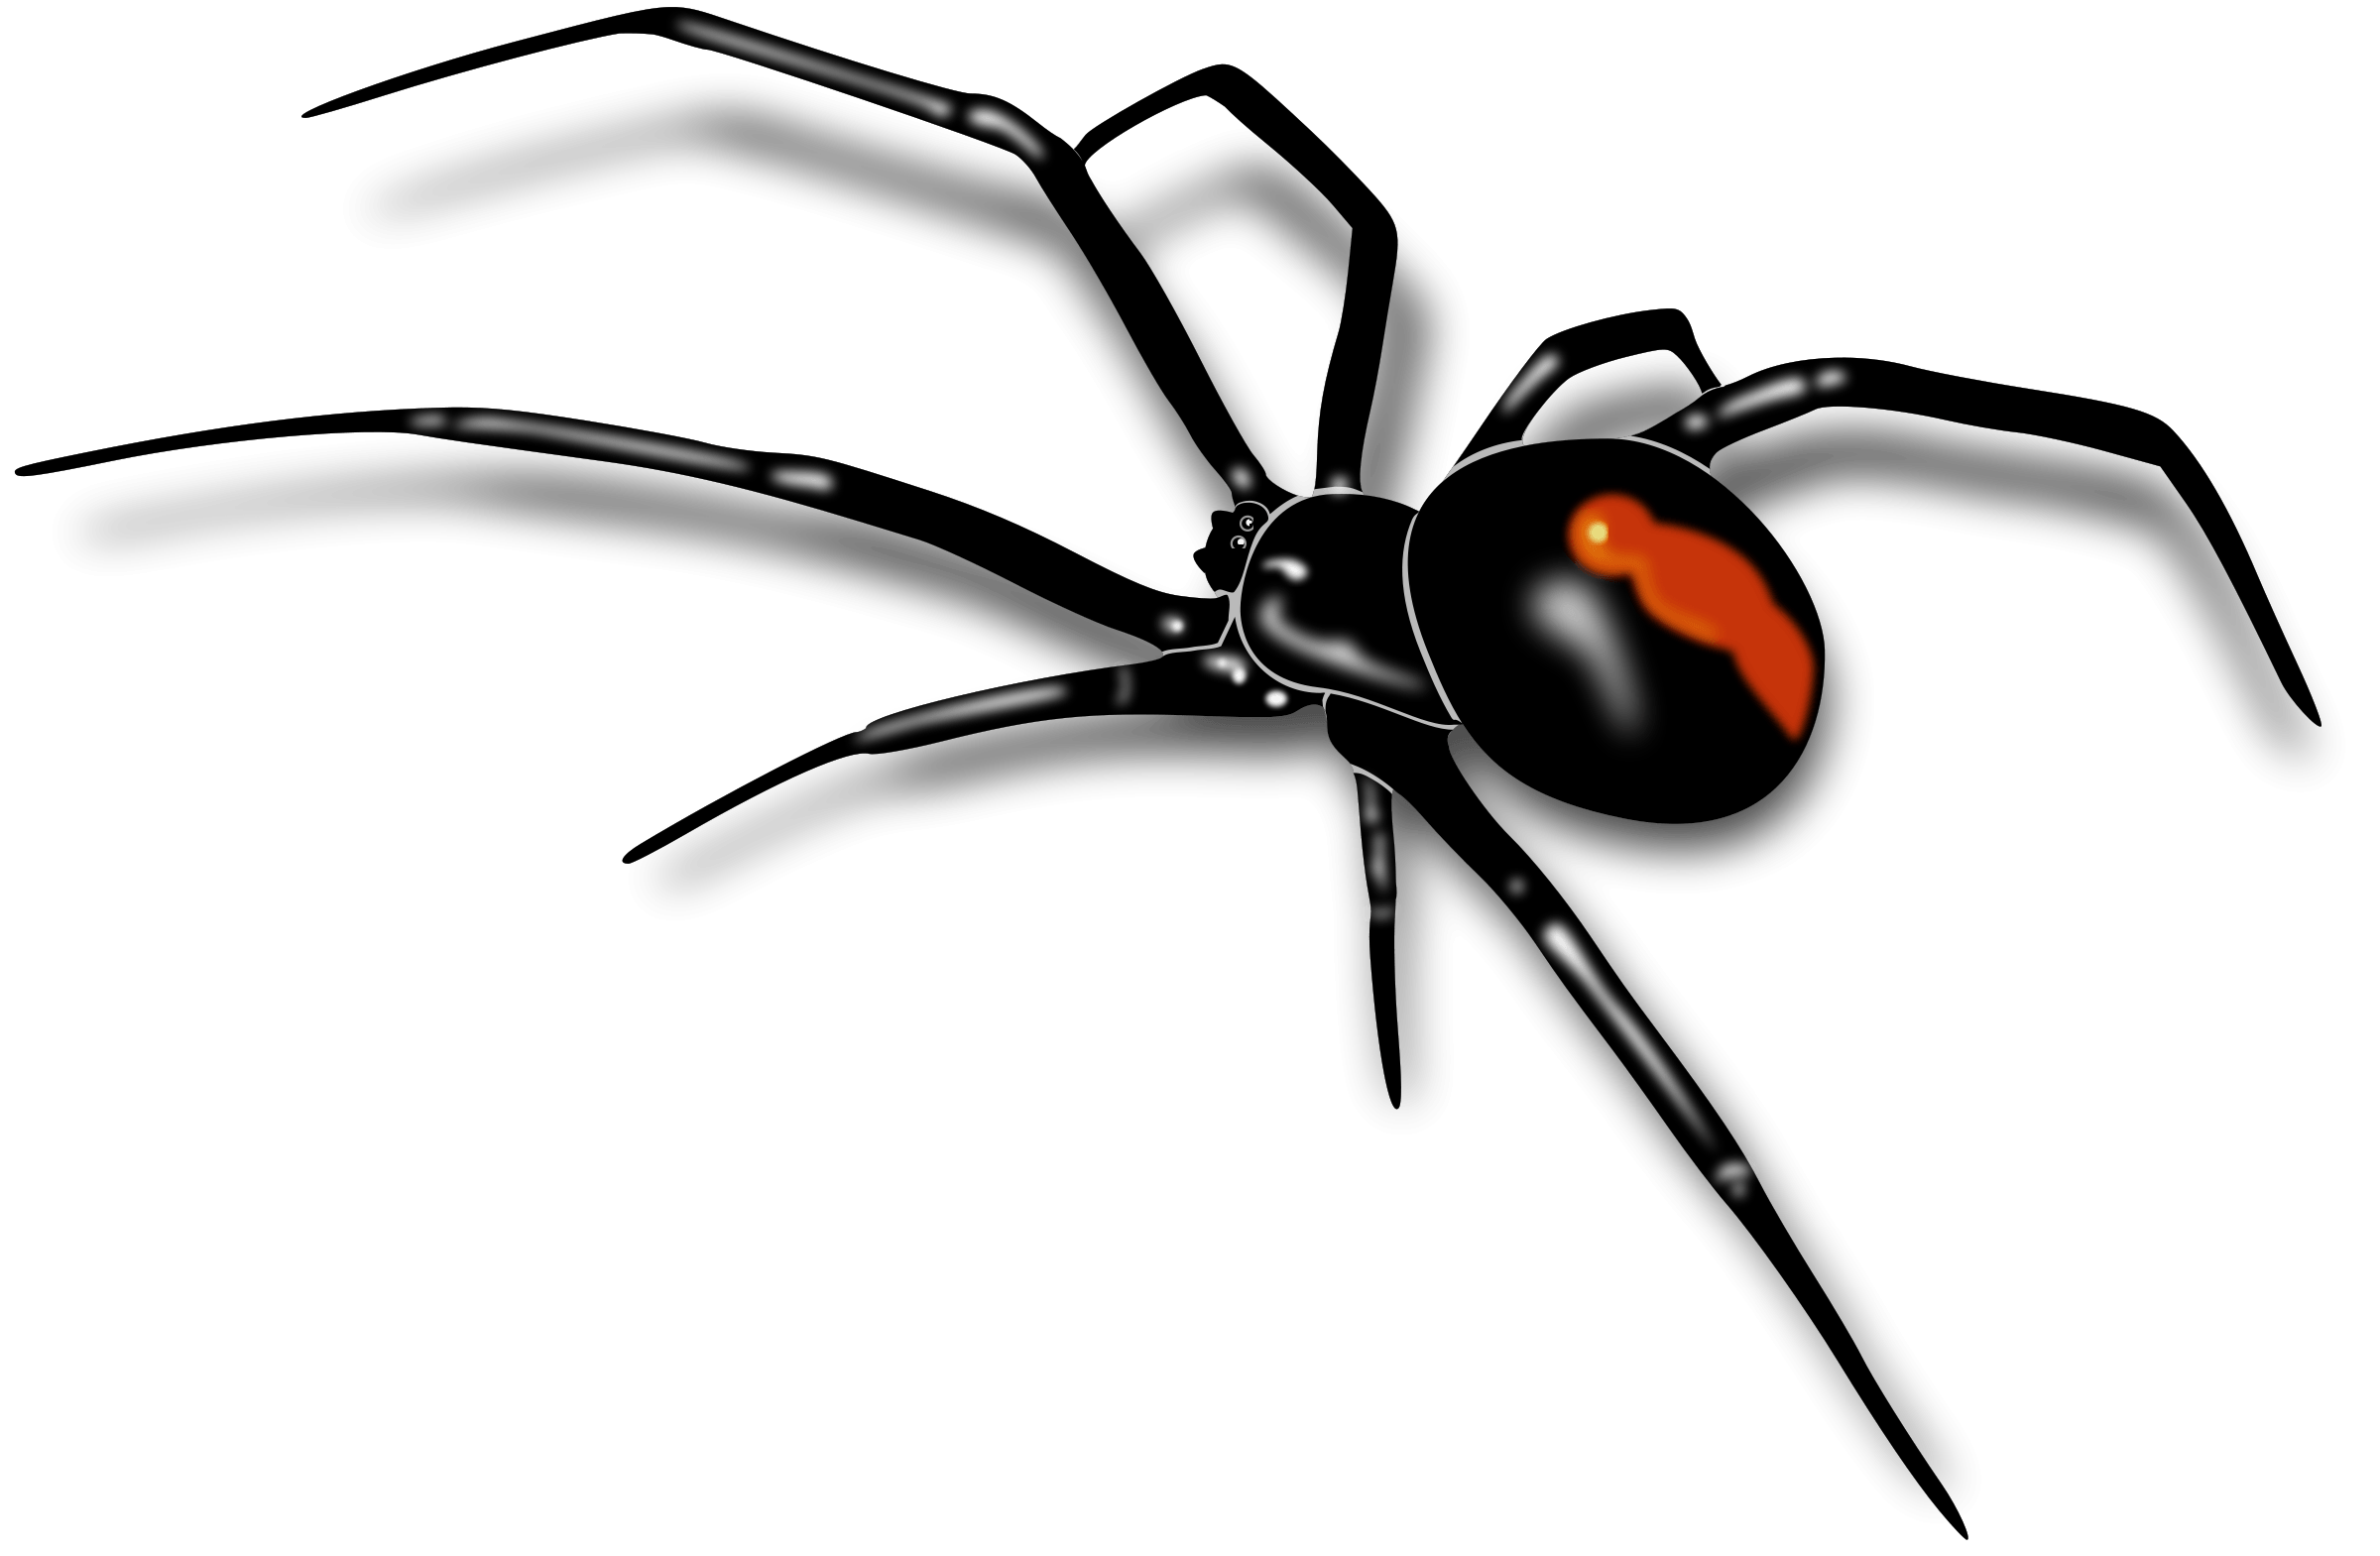 Spider Image (24)